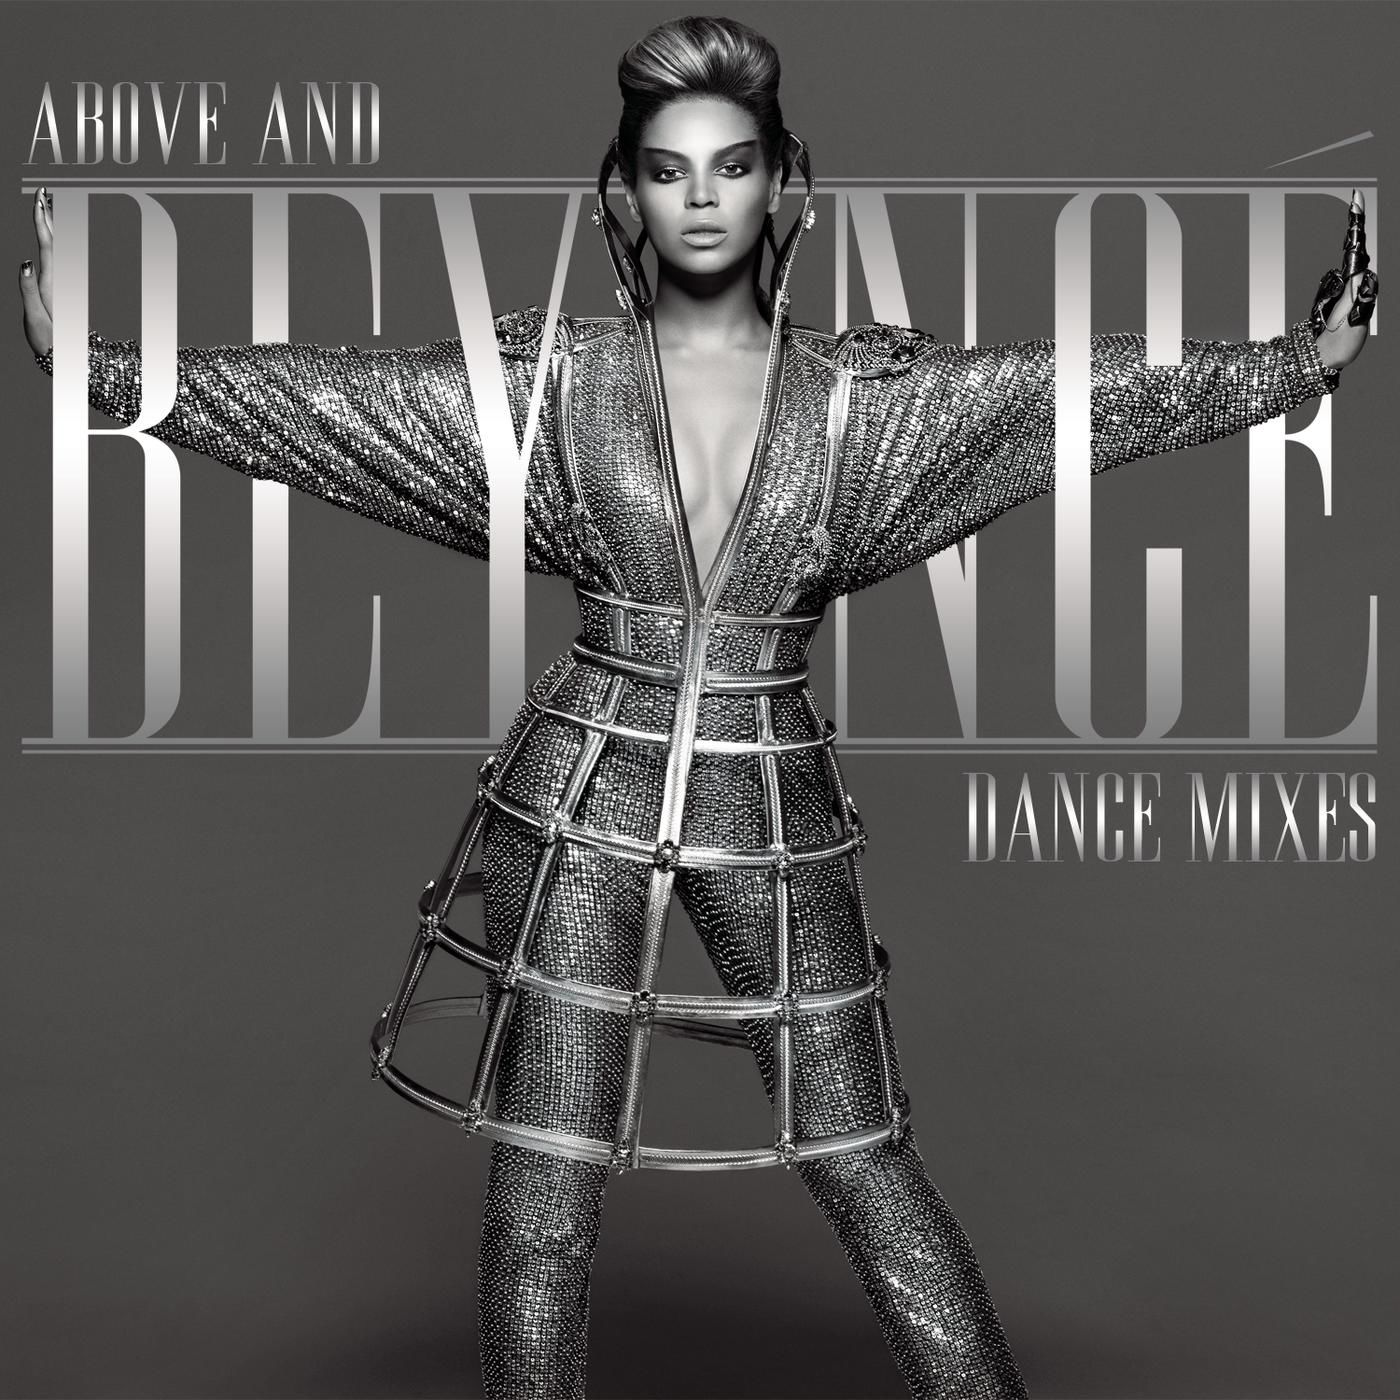 Beyoncé – Above And Beyoncé Dance Mixes【44.1kHz／16bit】美国区-OppsUpro音乐帝国